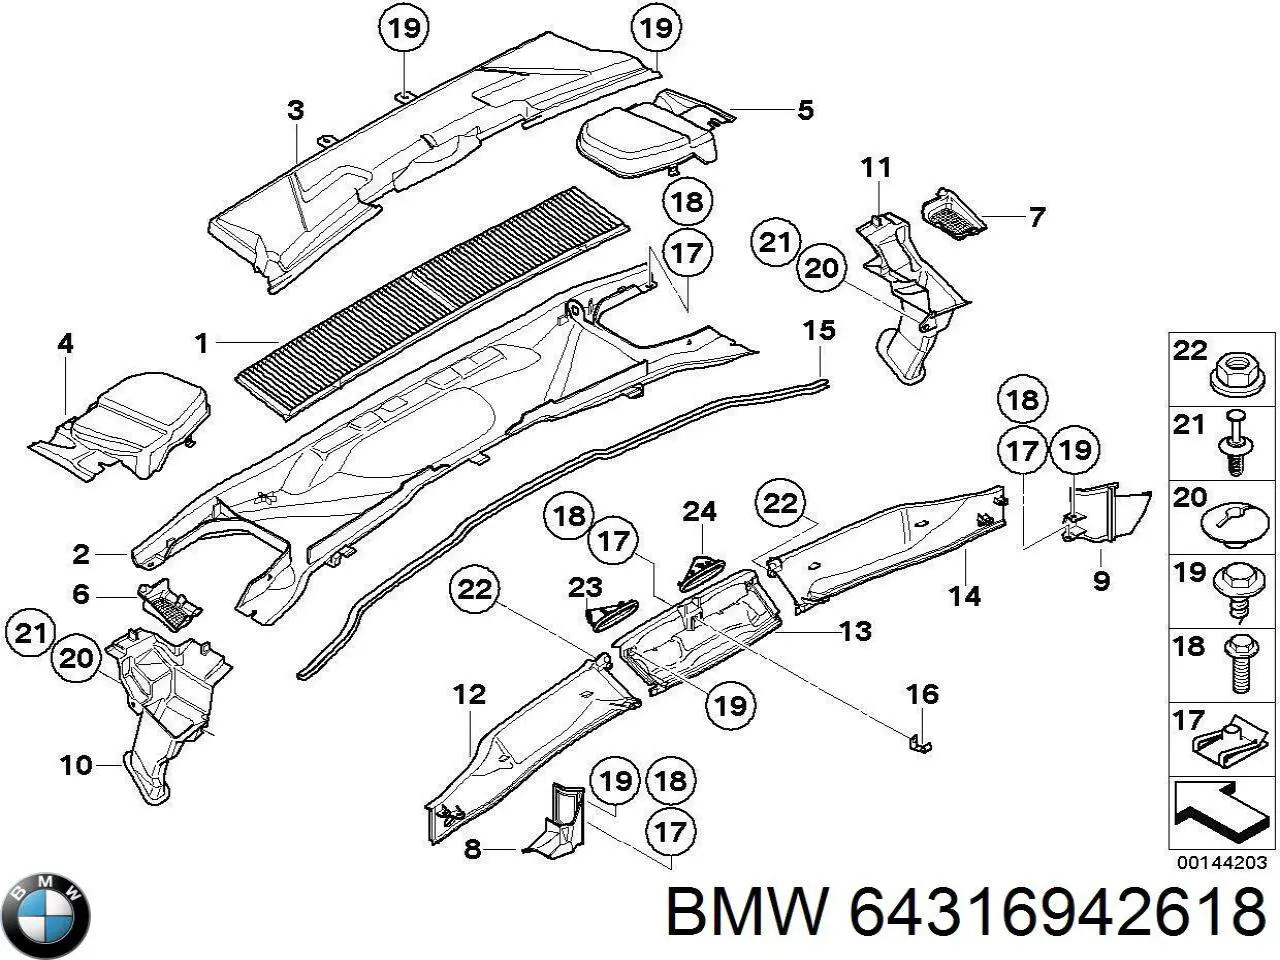 64319267638 BMW решетка водостока лобового стекла левая/правая